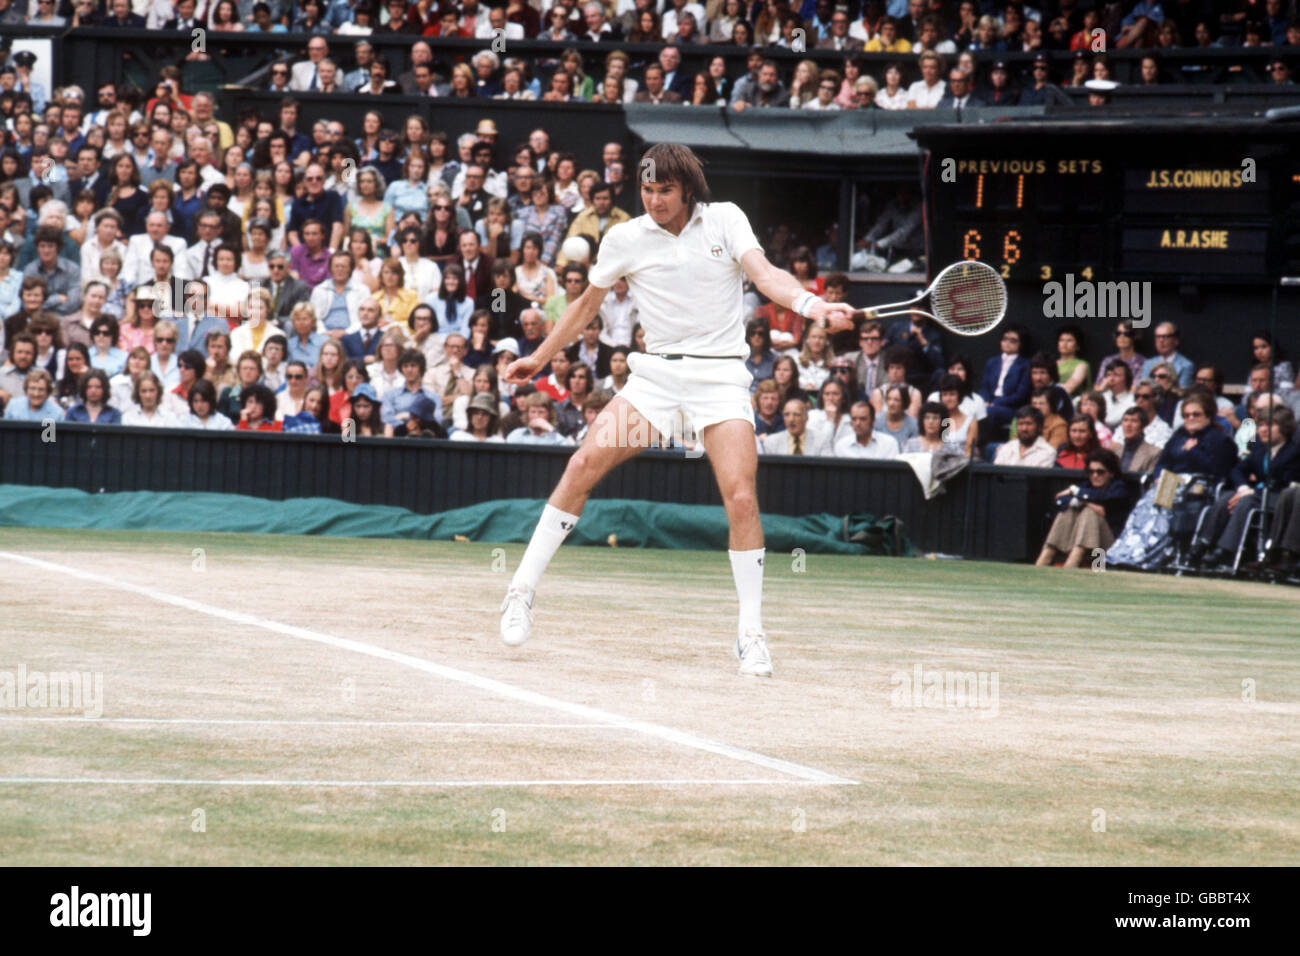 Tennis - Campionati di Wimbledon - Singles - finale - Arthur Ashe contro Jimmy Connors. Jimmy Connors in azione. Foto Stock